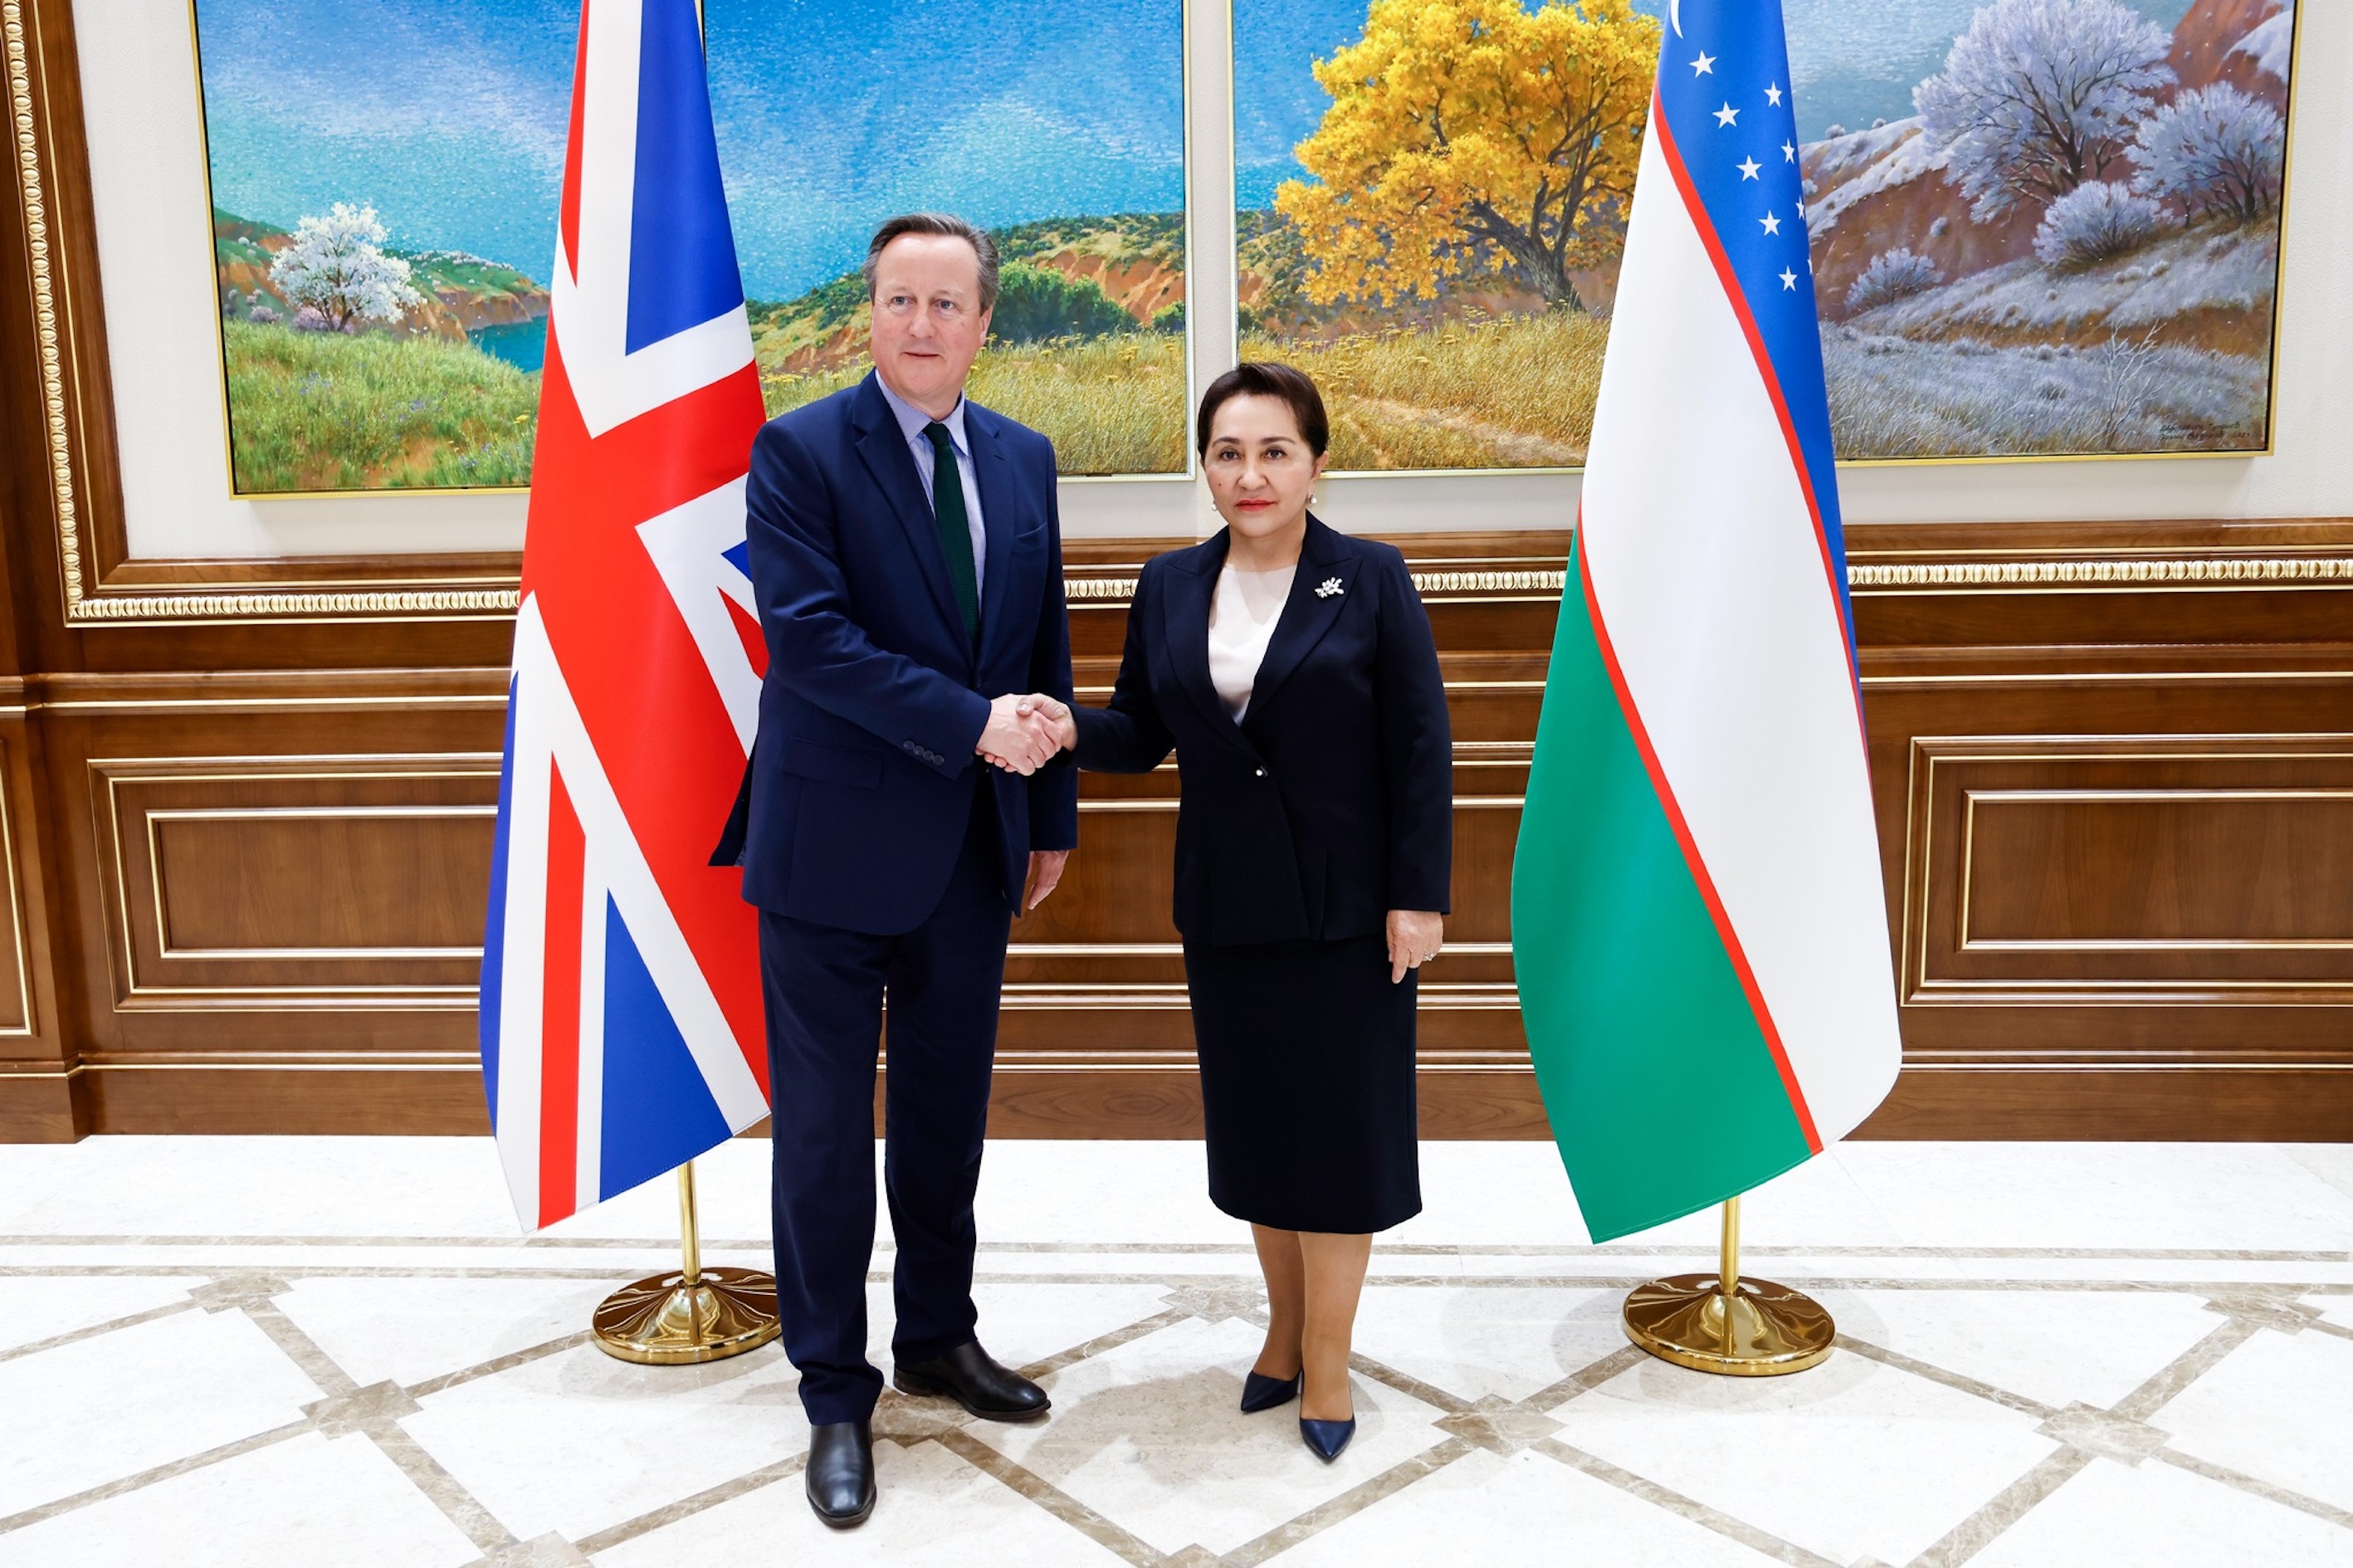 İngiltere Dışişleri Bakanı Cameron, Özbekistan'da temaslarda bulundu